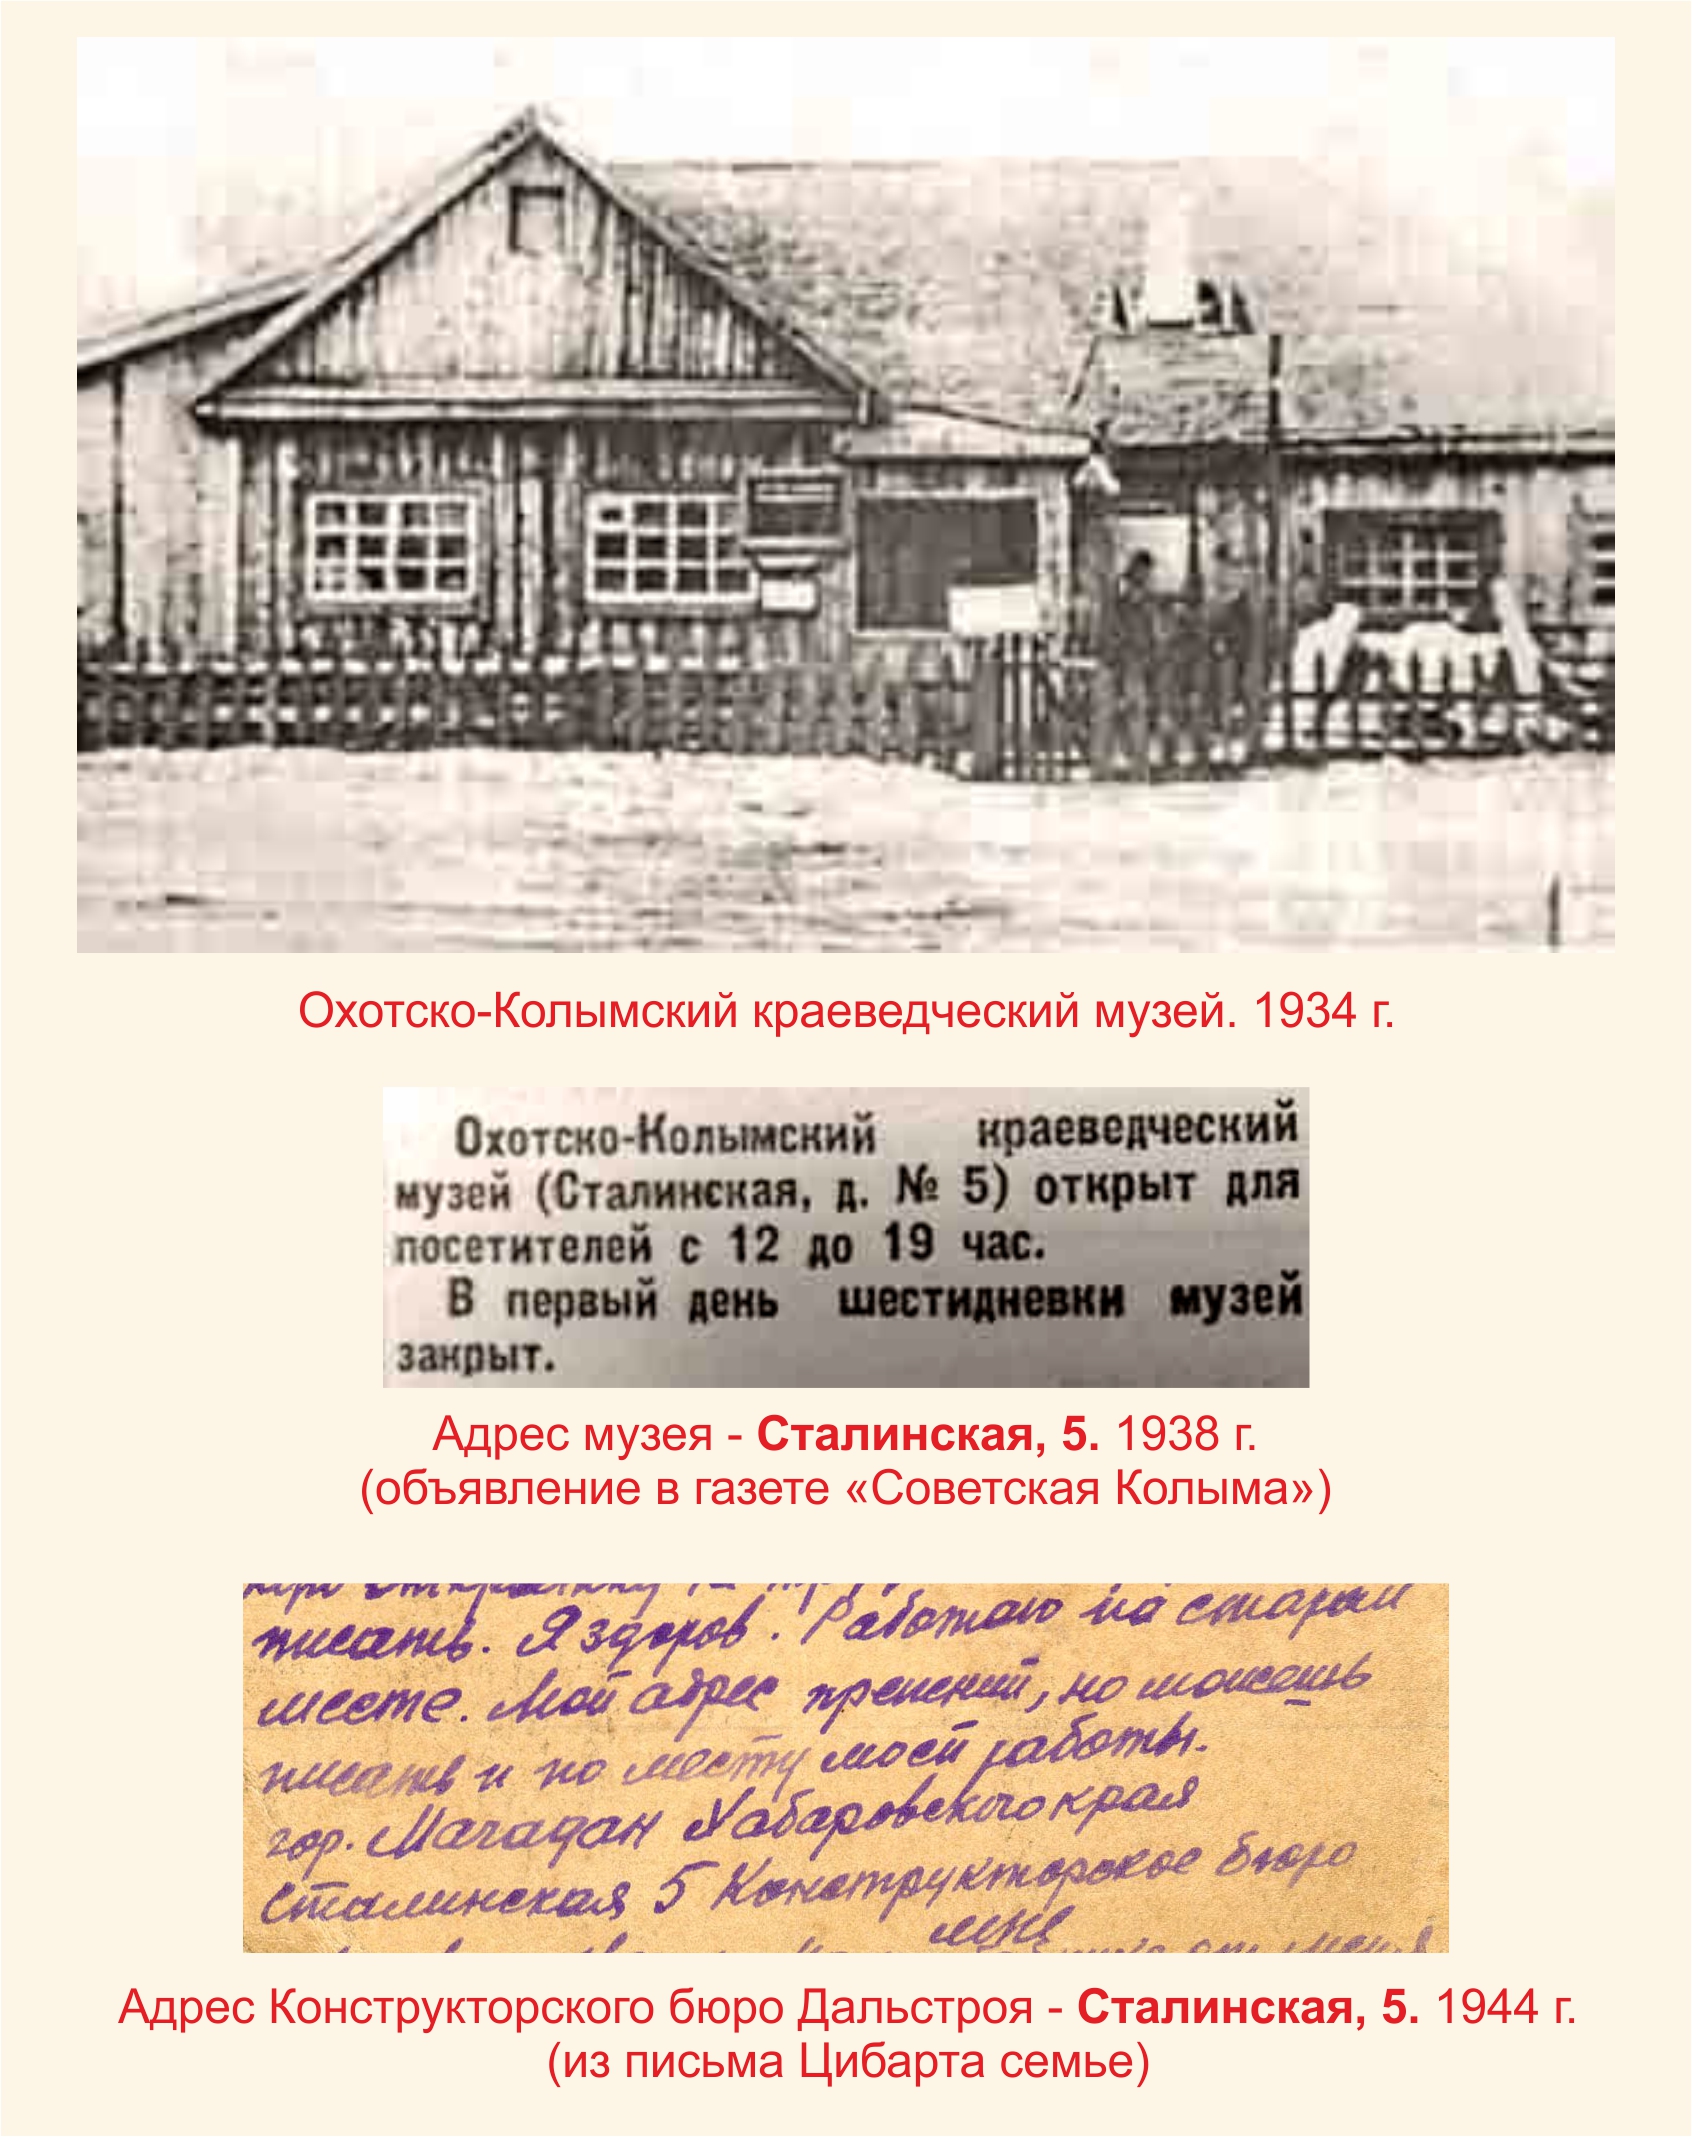 Охотско-Колымский краеведческий музей, 1934